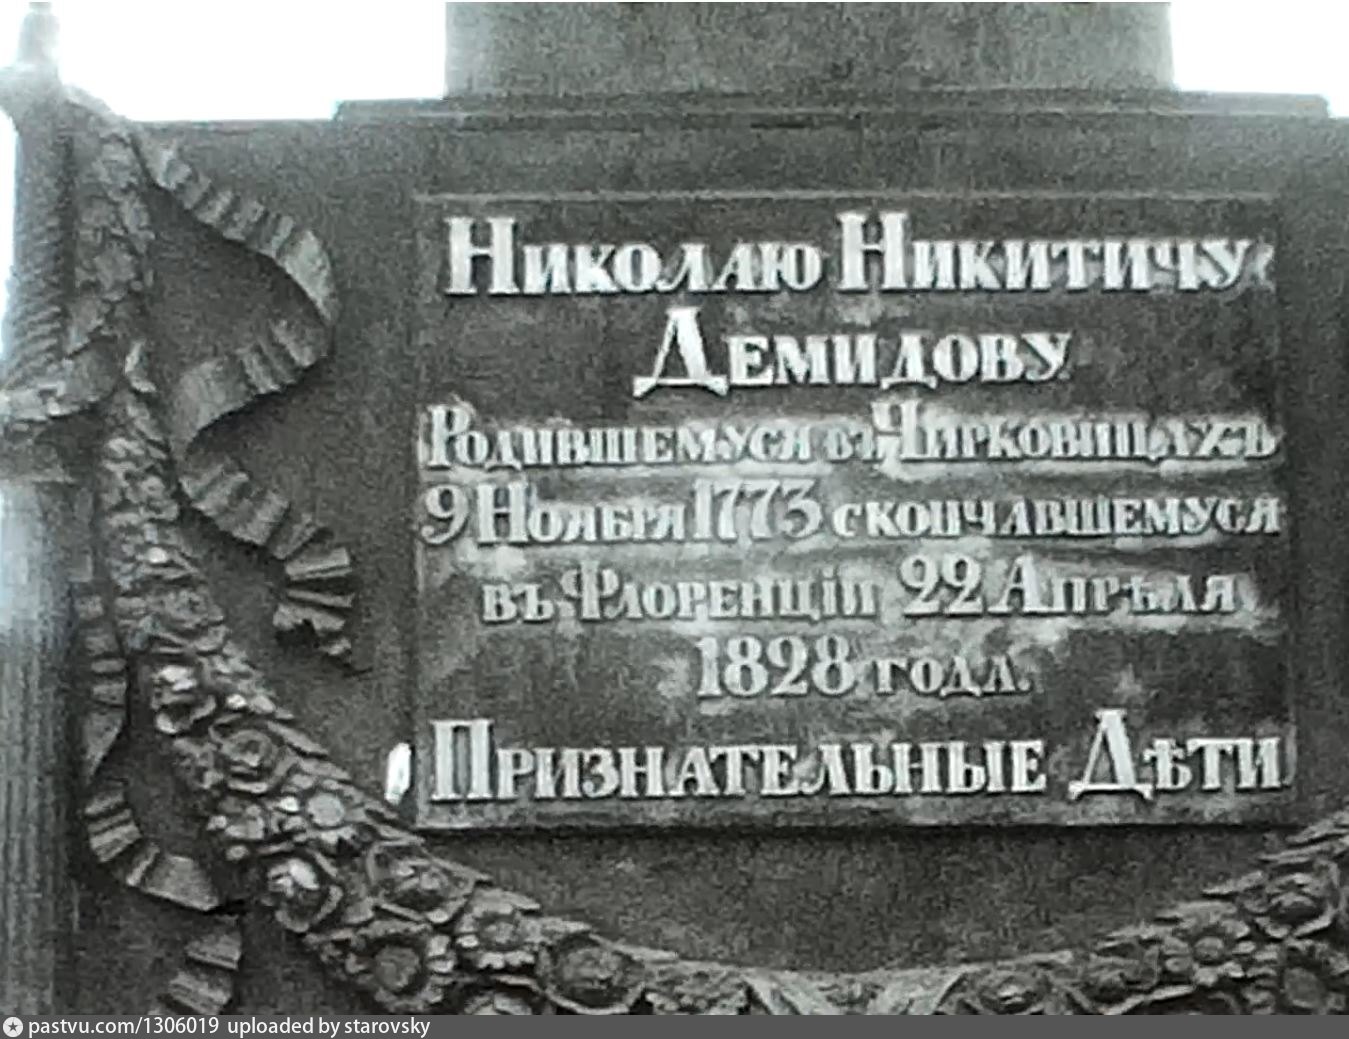 Чирковицы памятник Демидову